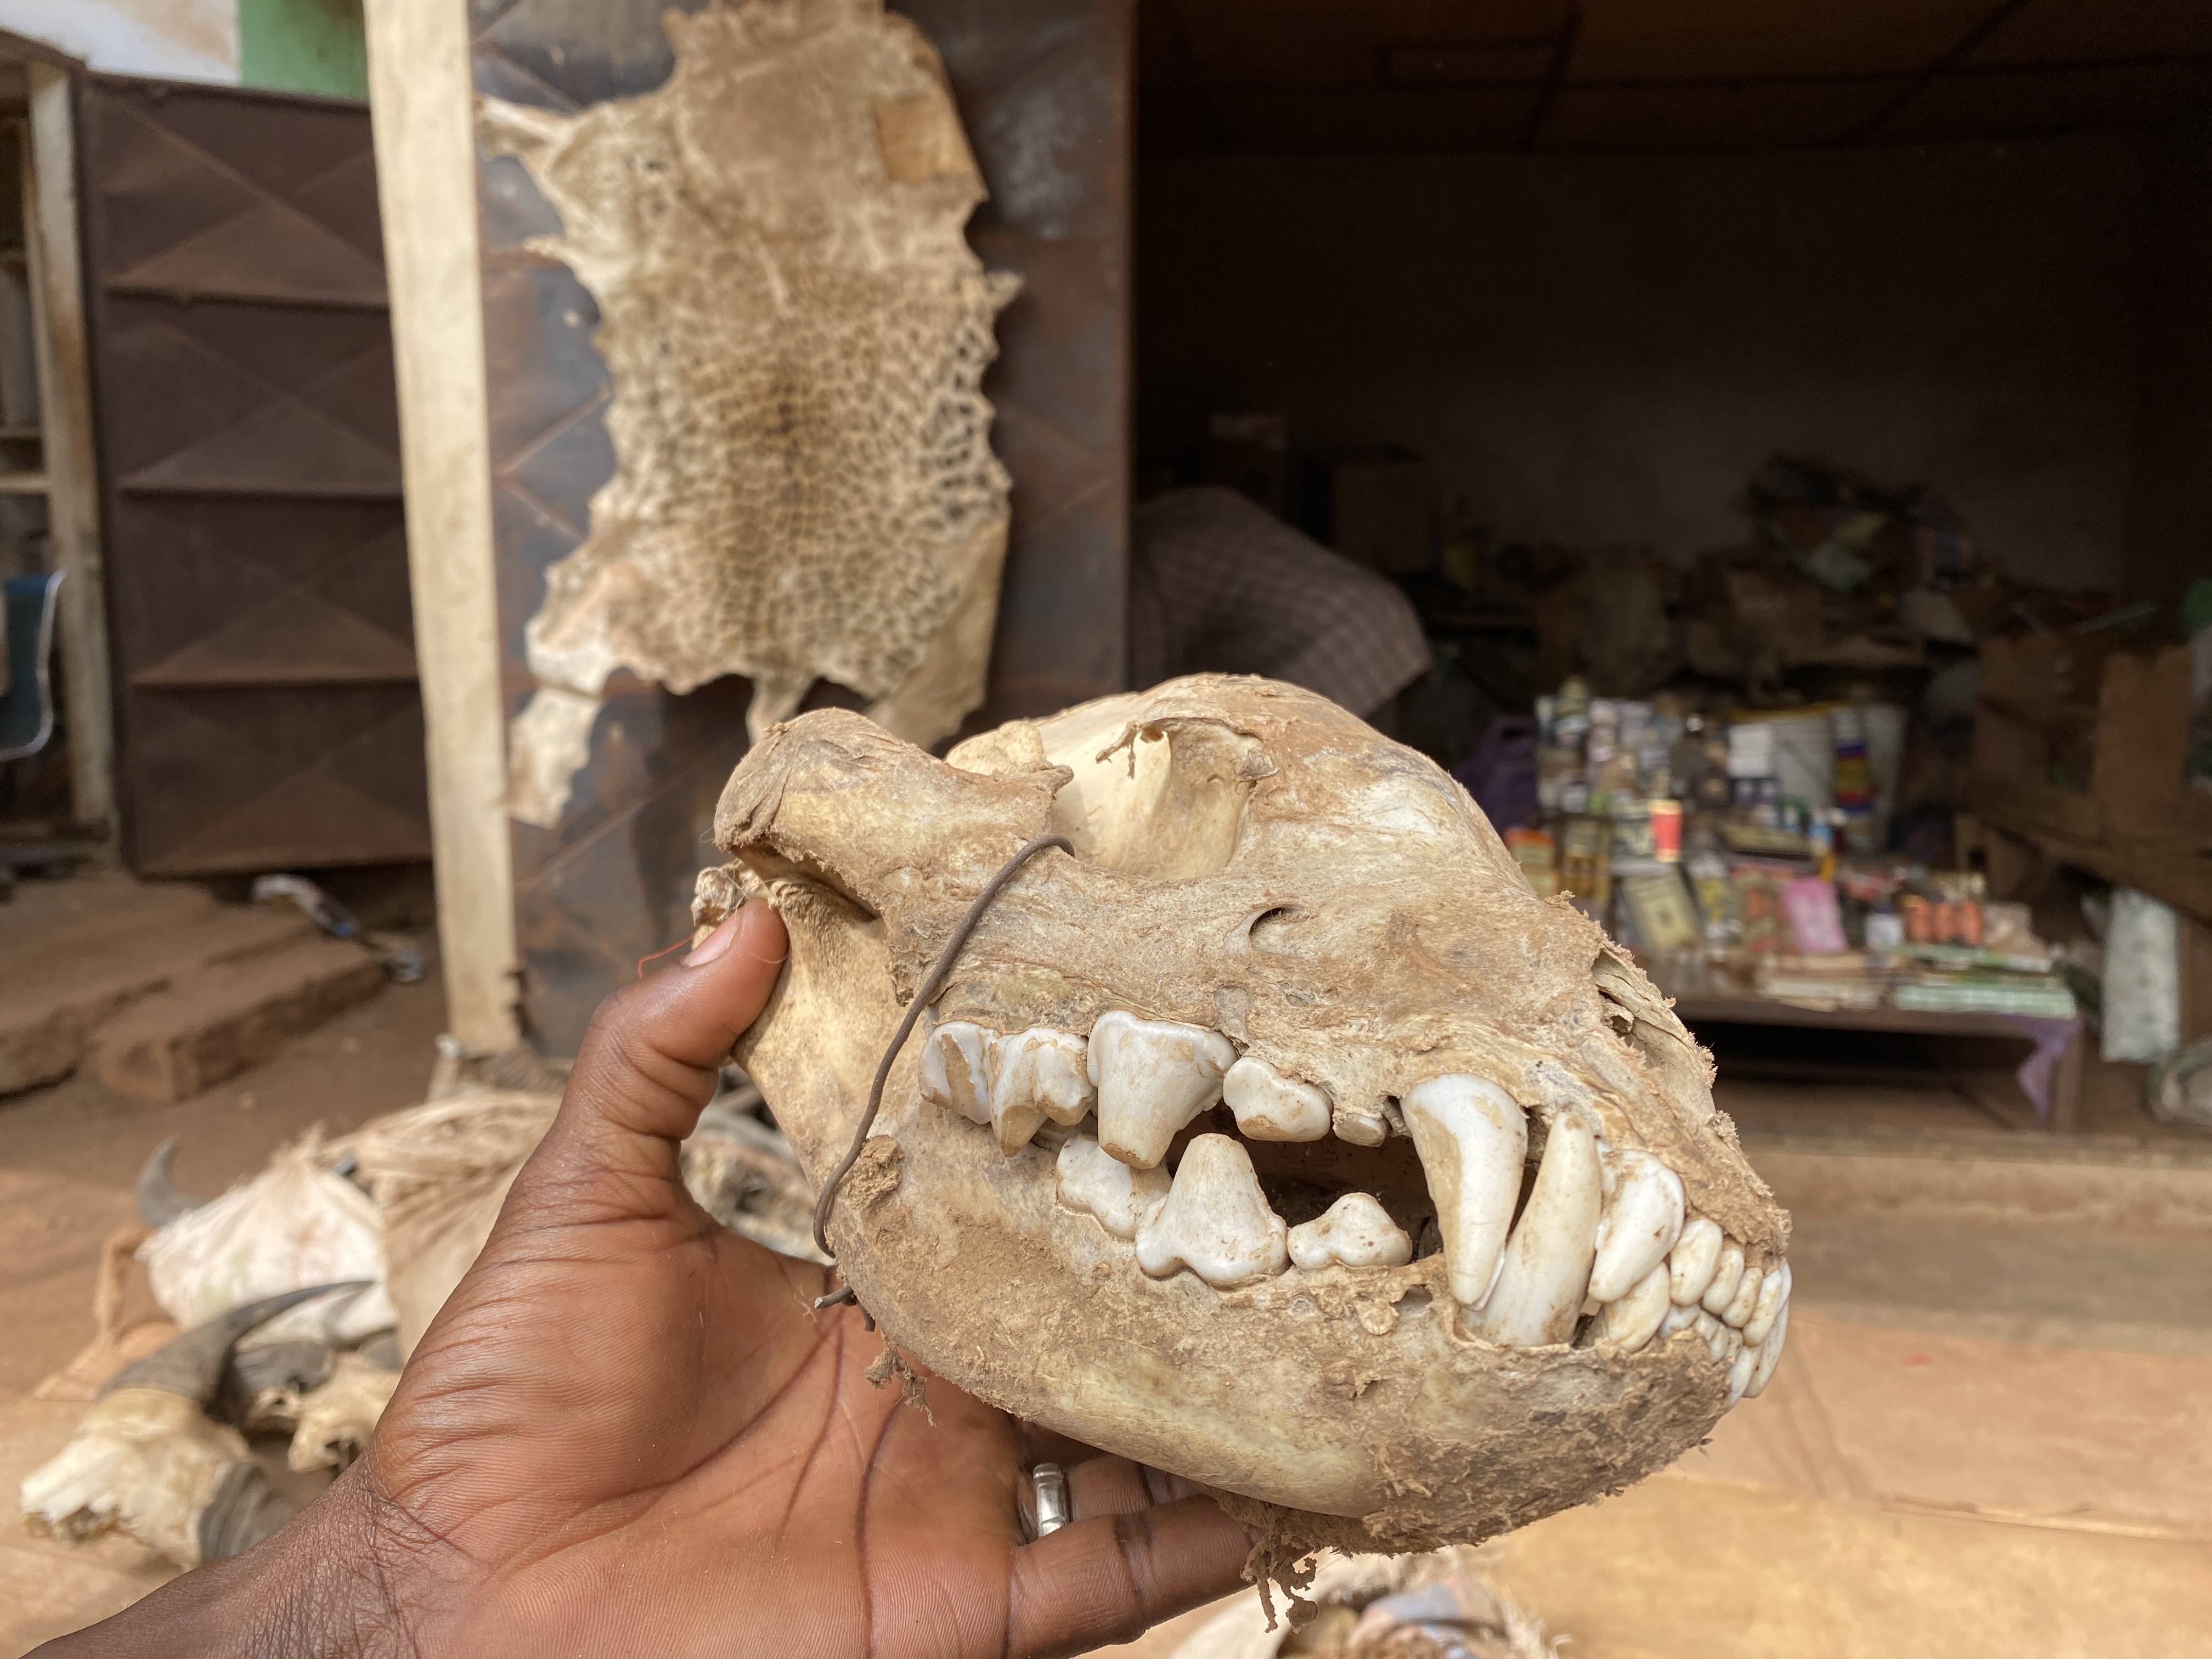 Carnivore skull